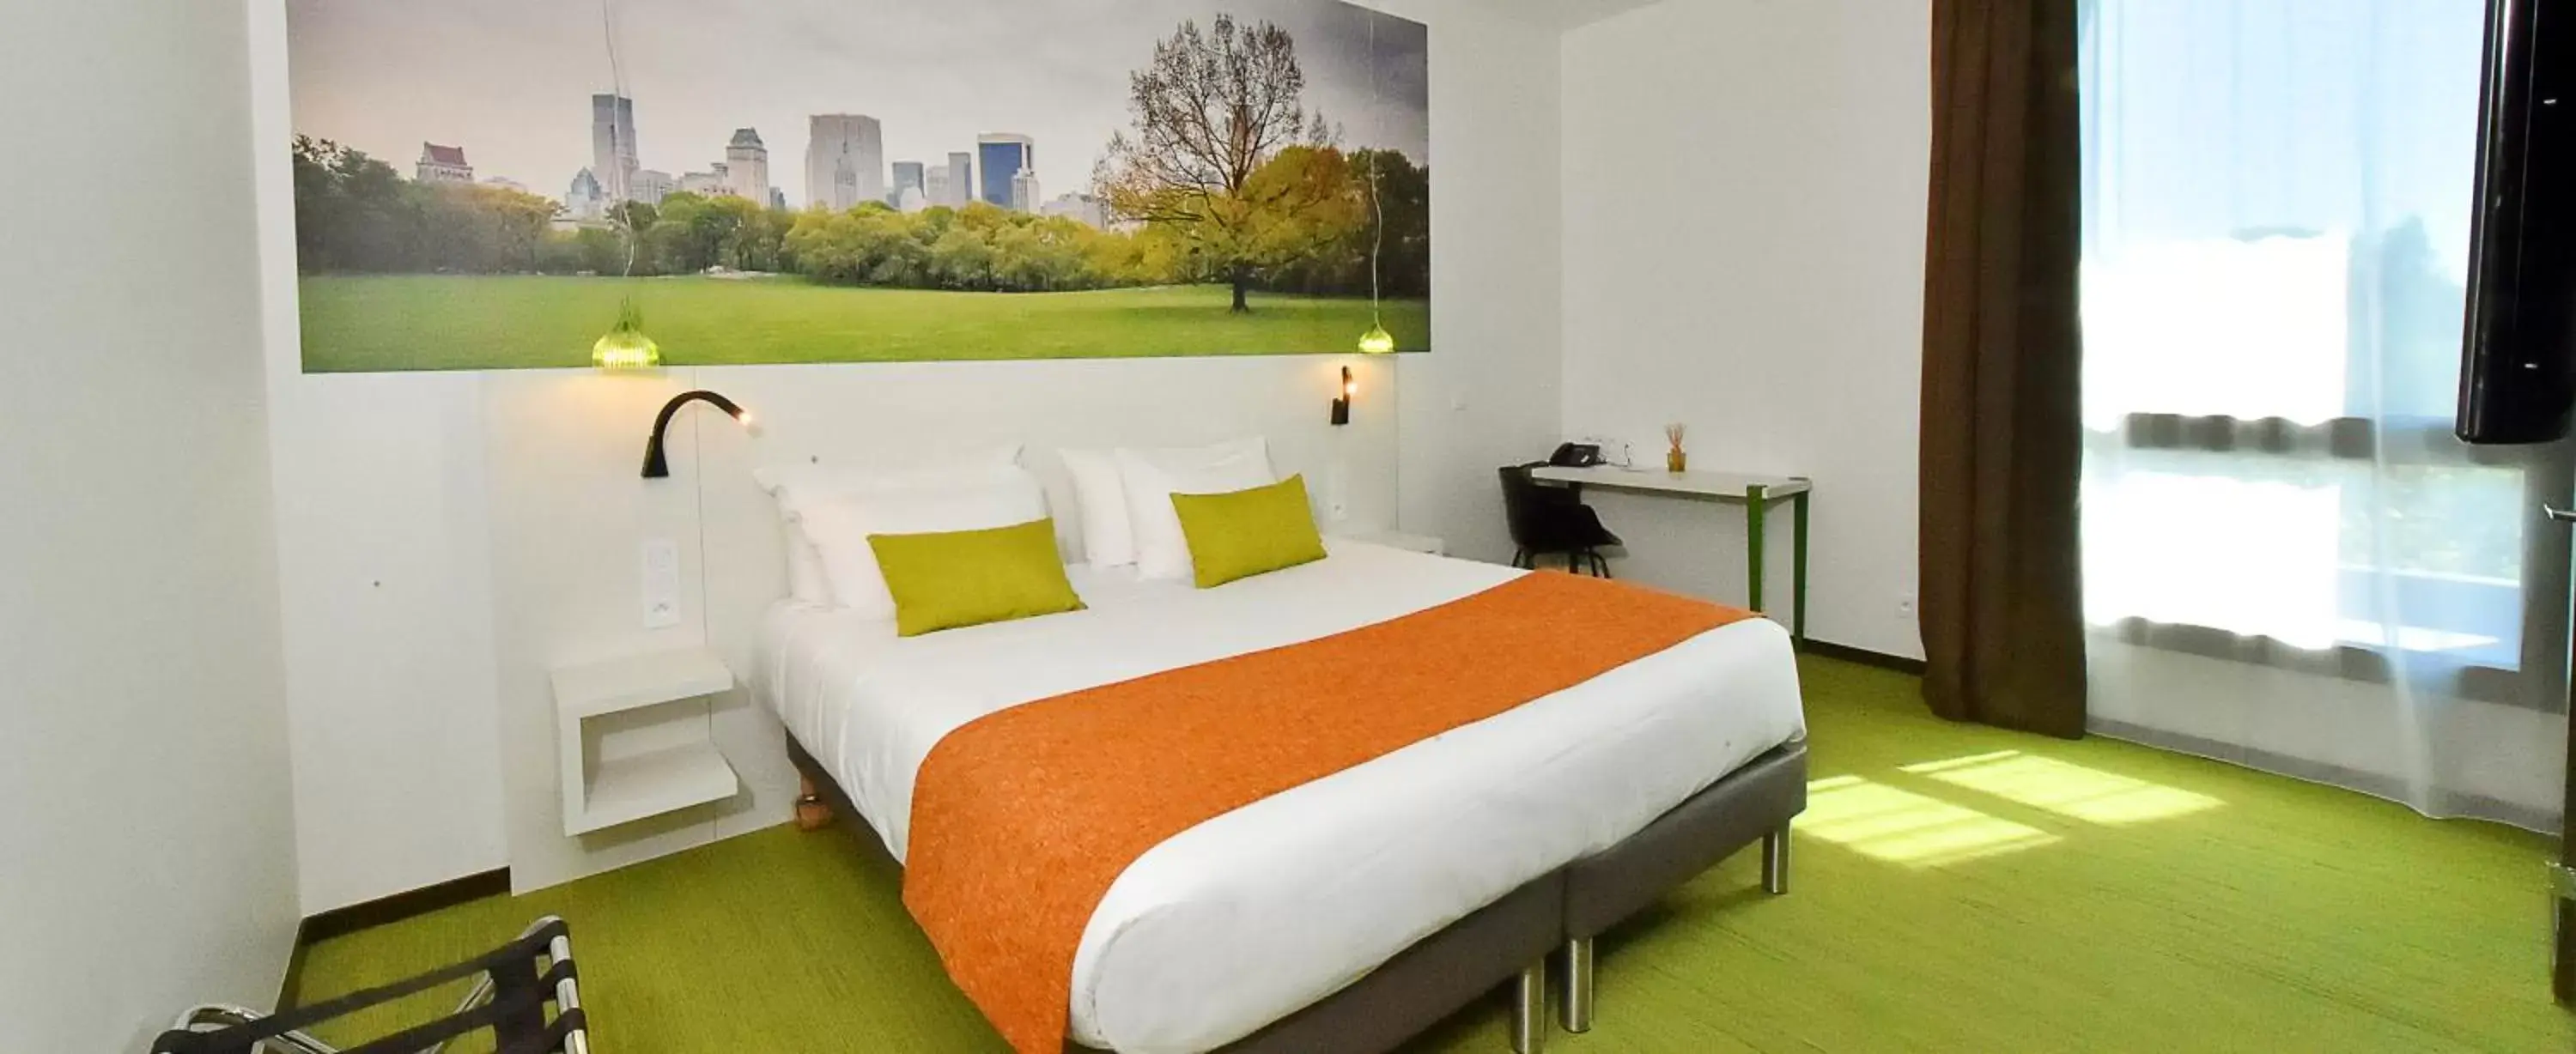 Bedroom, Bed in Central Park Hôtel & Spa